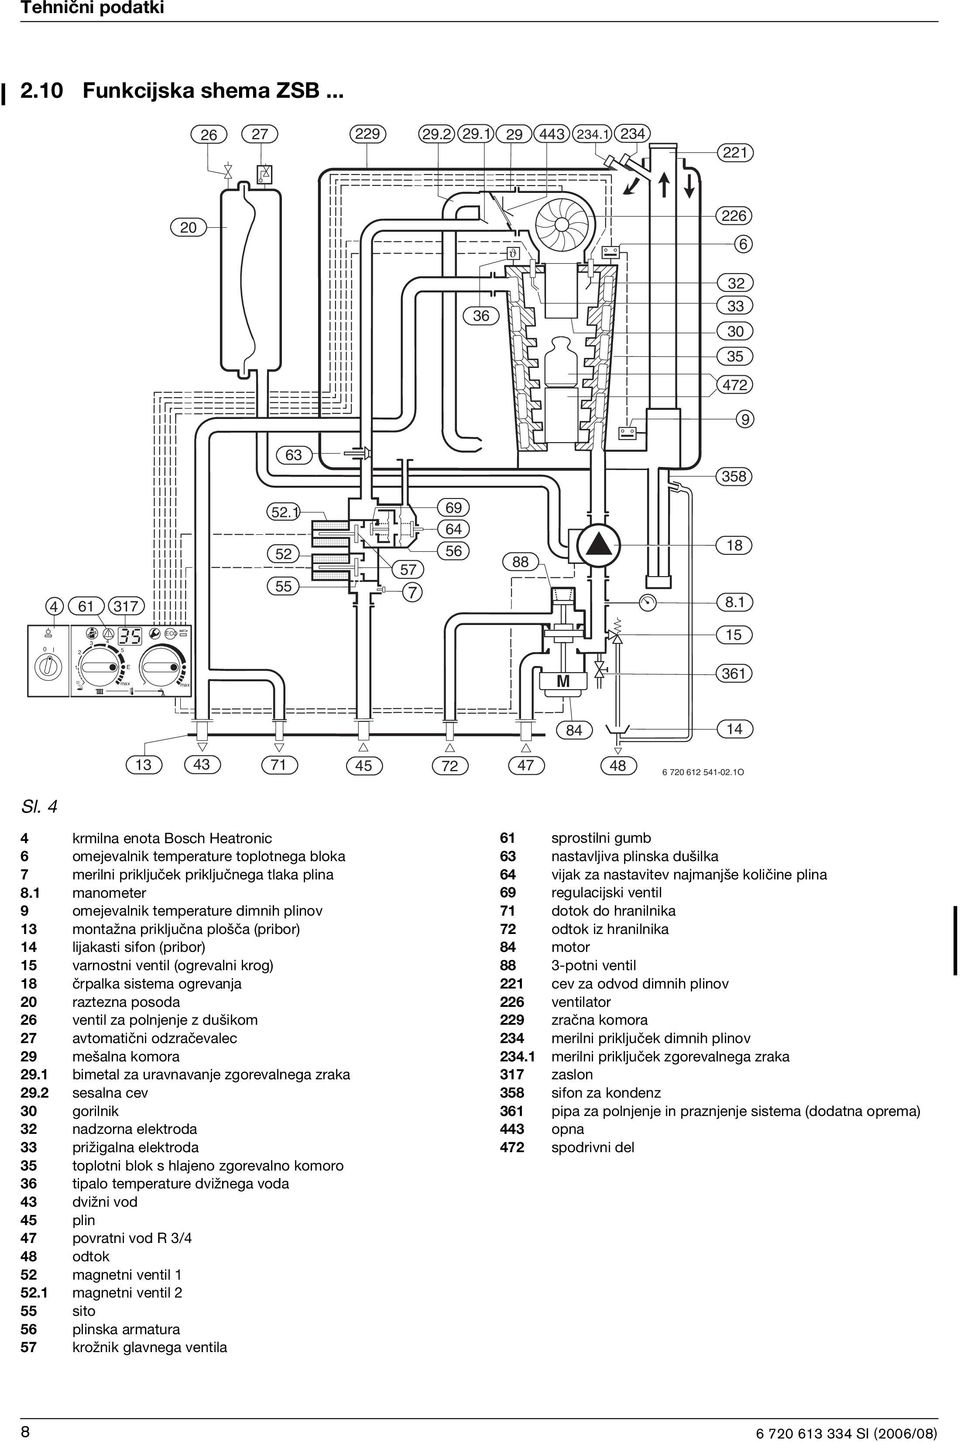 4 4 krmilna enota Bosch Heatronic 6 omejevalnik temperature toplotnega bloka 7 merilni priključek priključnega tlaka plina 8.